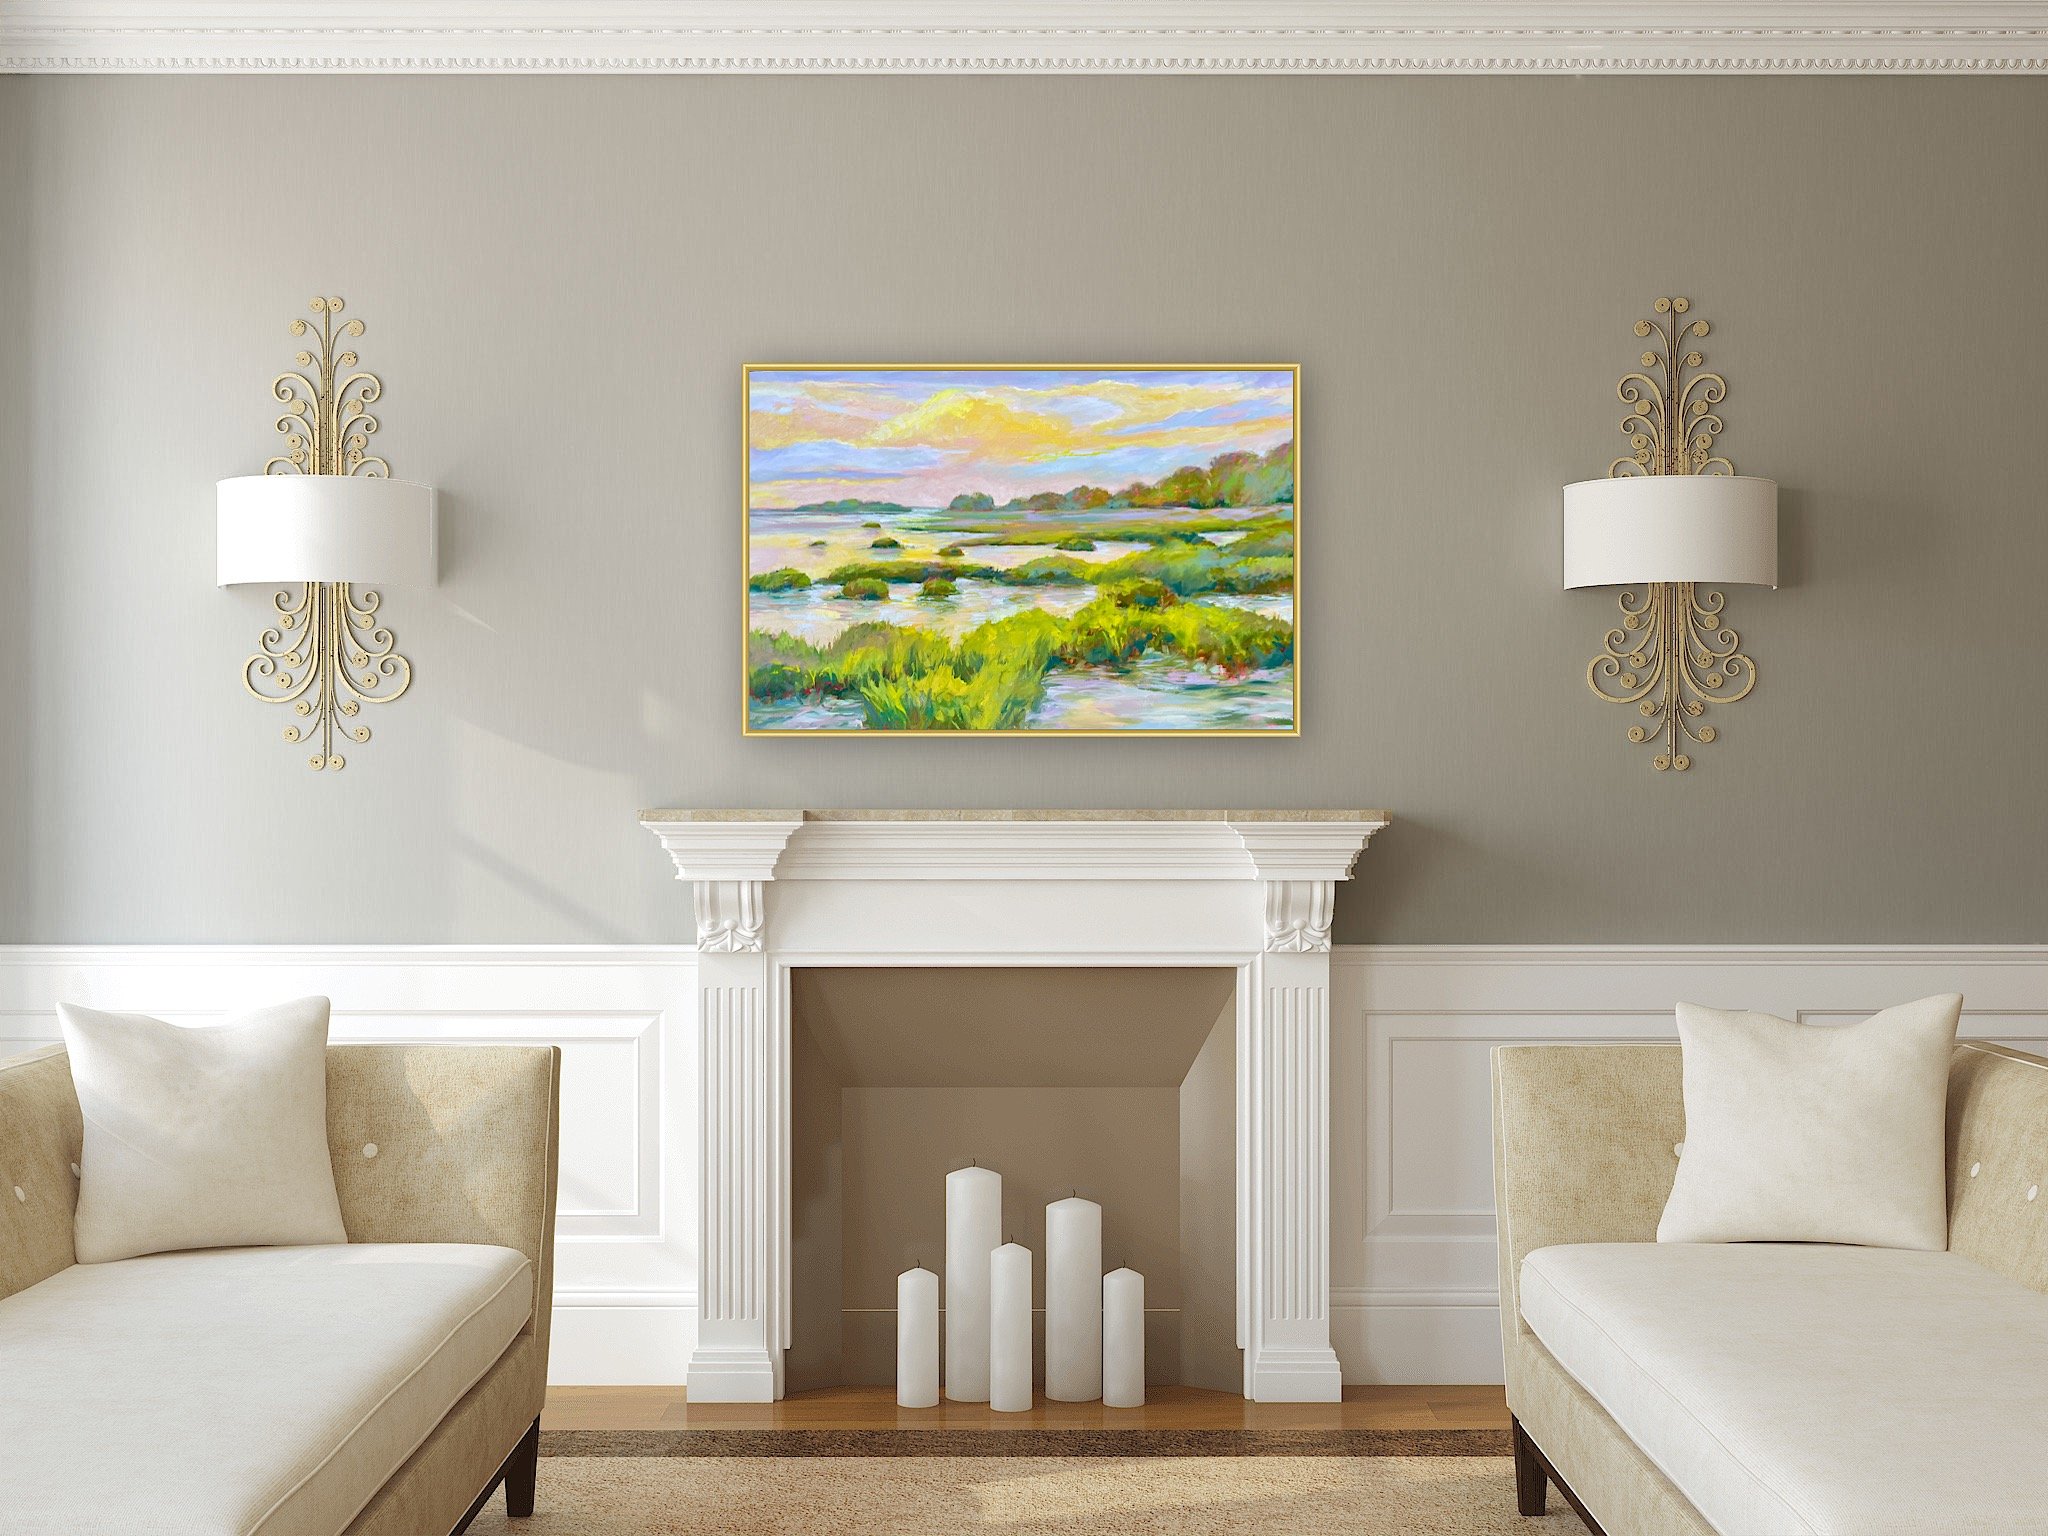 Marsh-1-Katie-Podracky-coastal-art-salt-marsh-cumberland-island-colorful-painting-oil-painting.JPG